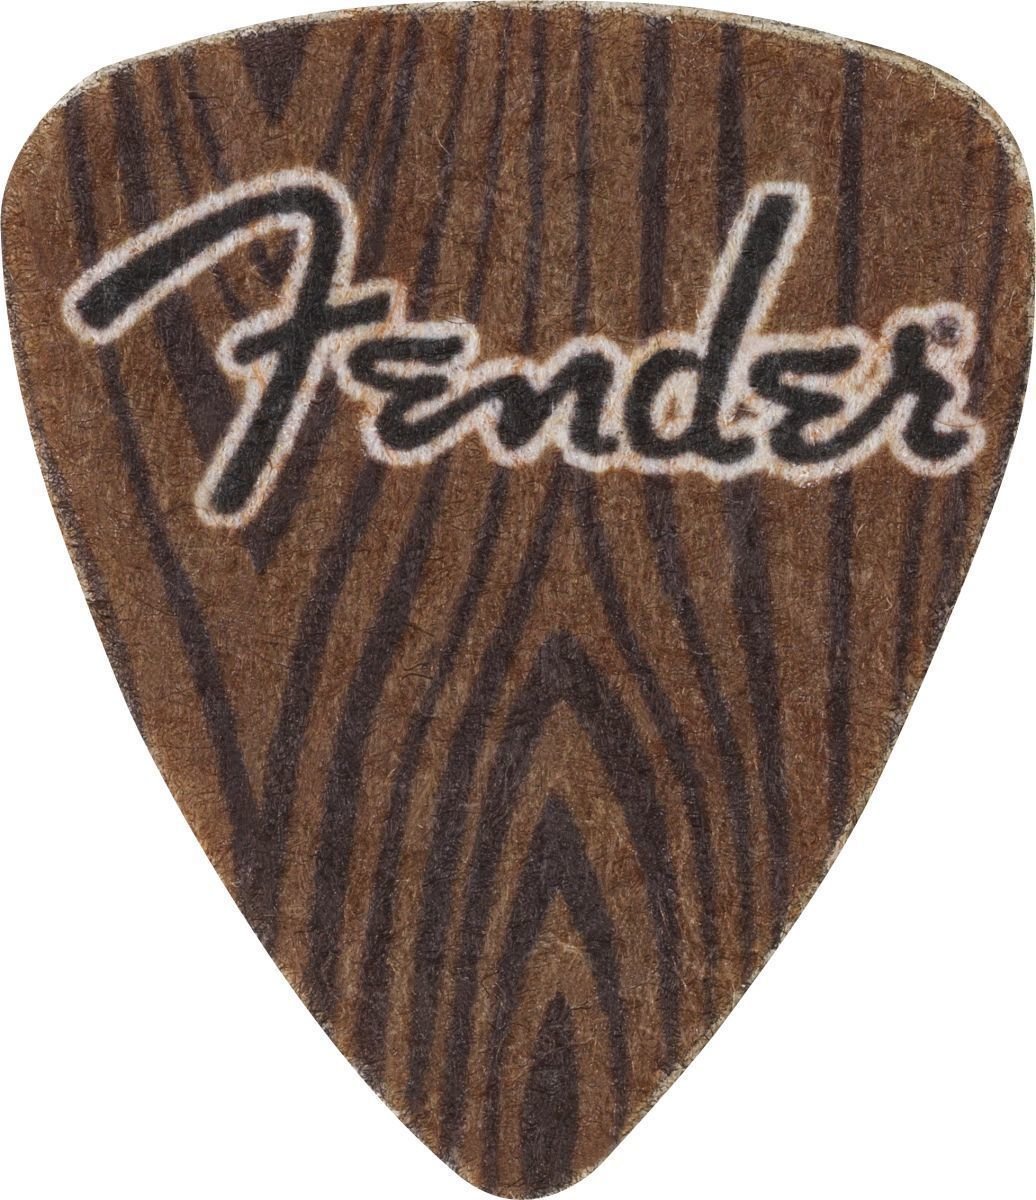 Trsátko pro Ukulele Fender 198-0351-400 Trsátko pro Ukulele